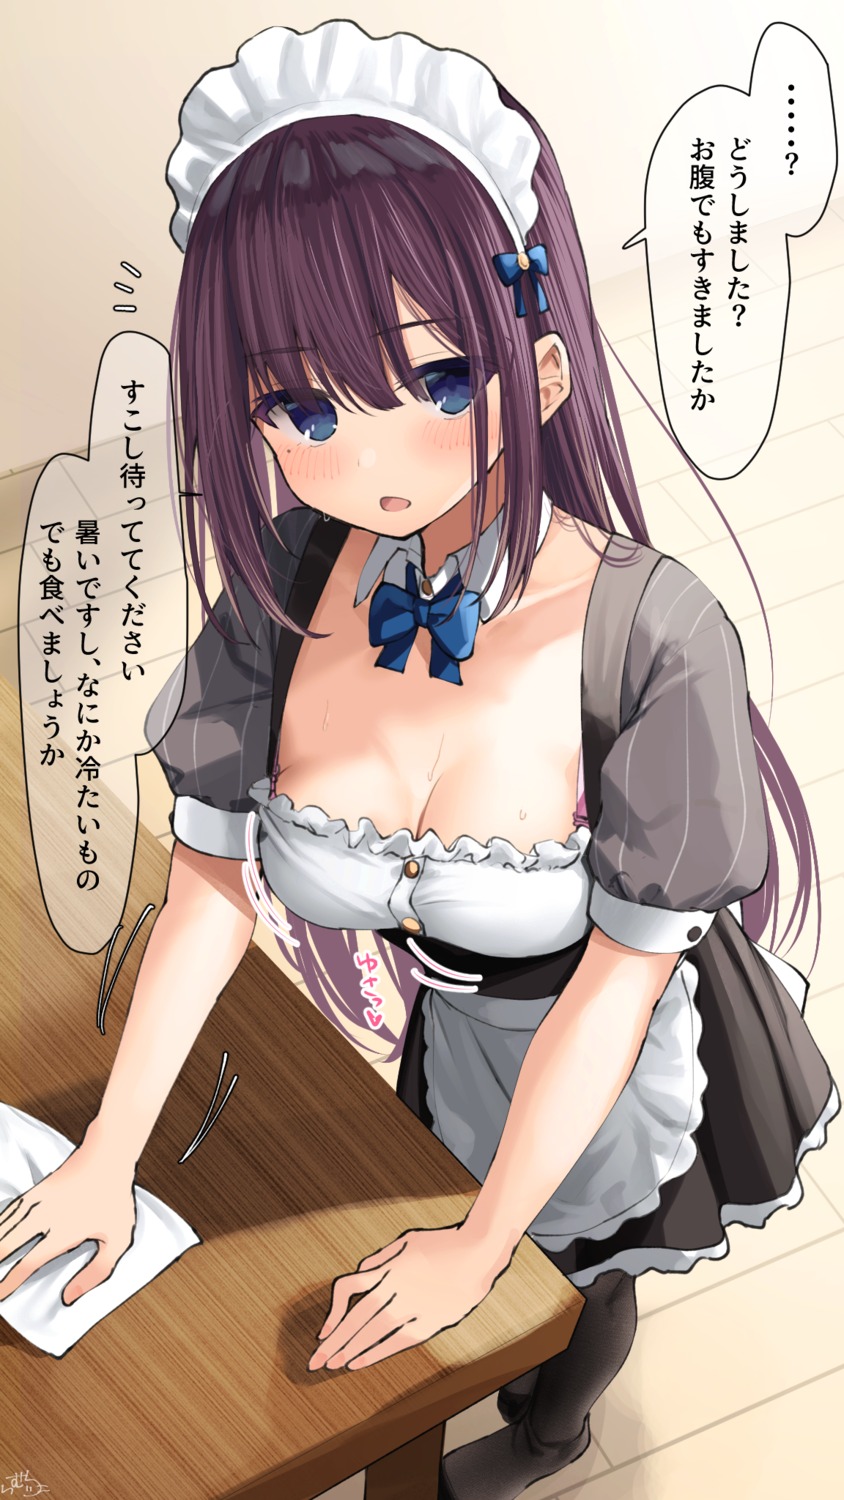 bra cleavage maid maid-chan_(ramchi) ramchi